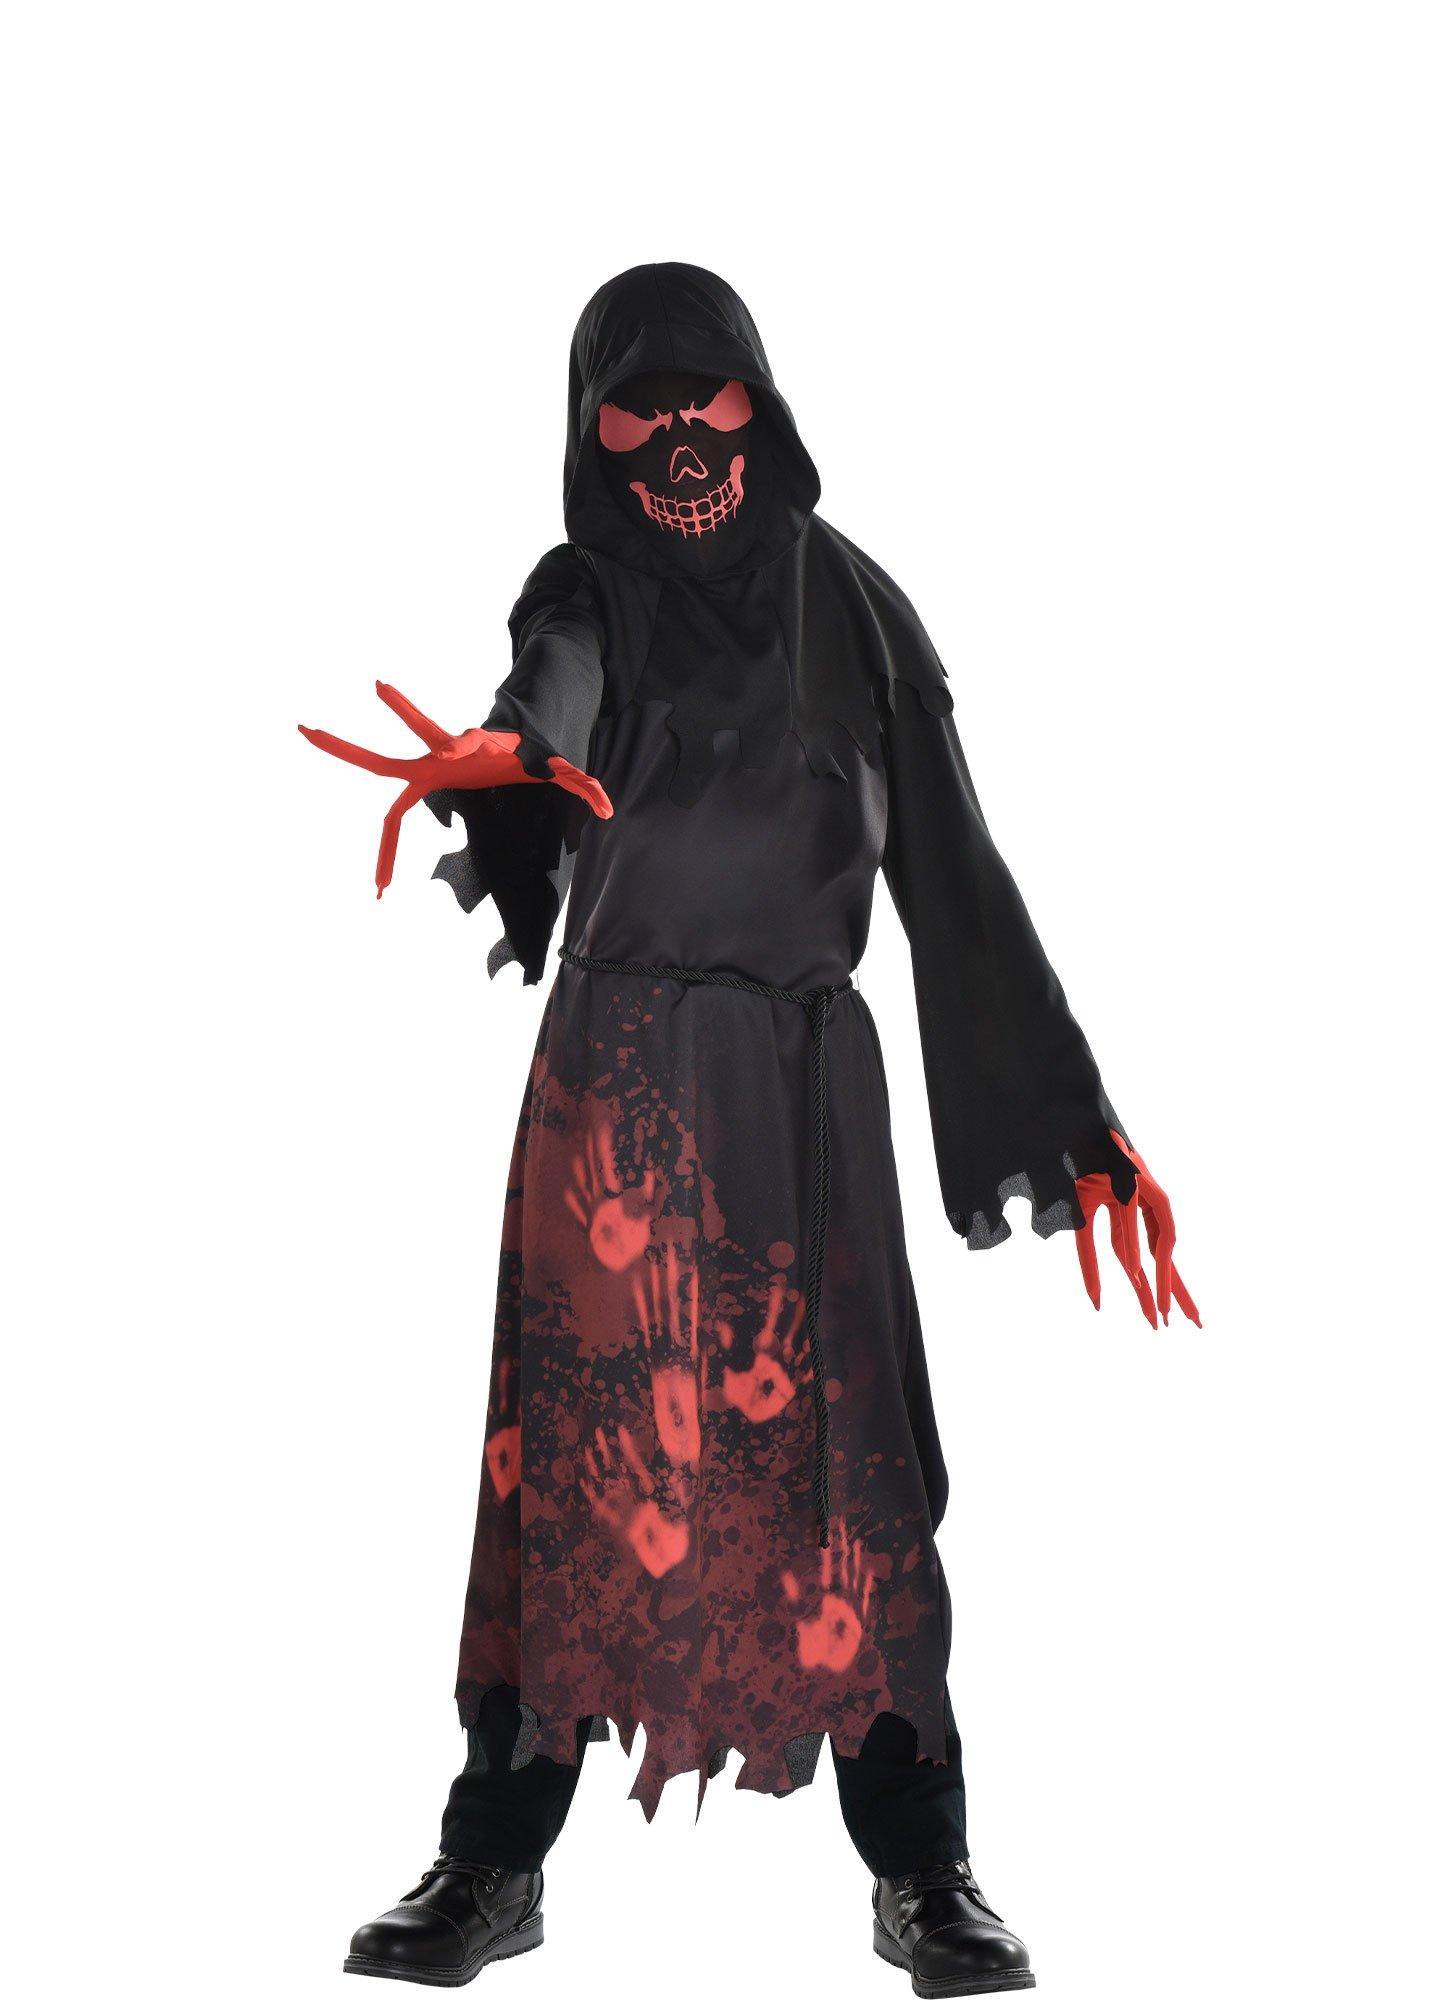 Laster voorbeeld schermutseling Kids' Hooded Horror Costume | Party City